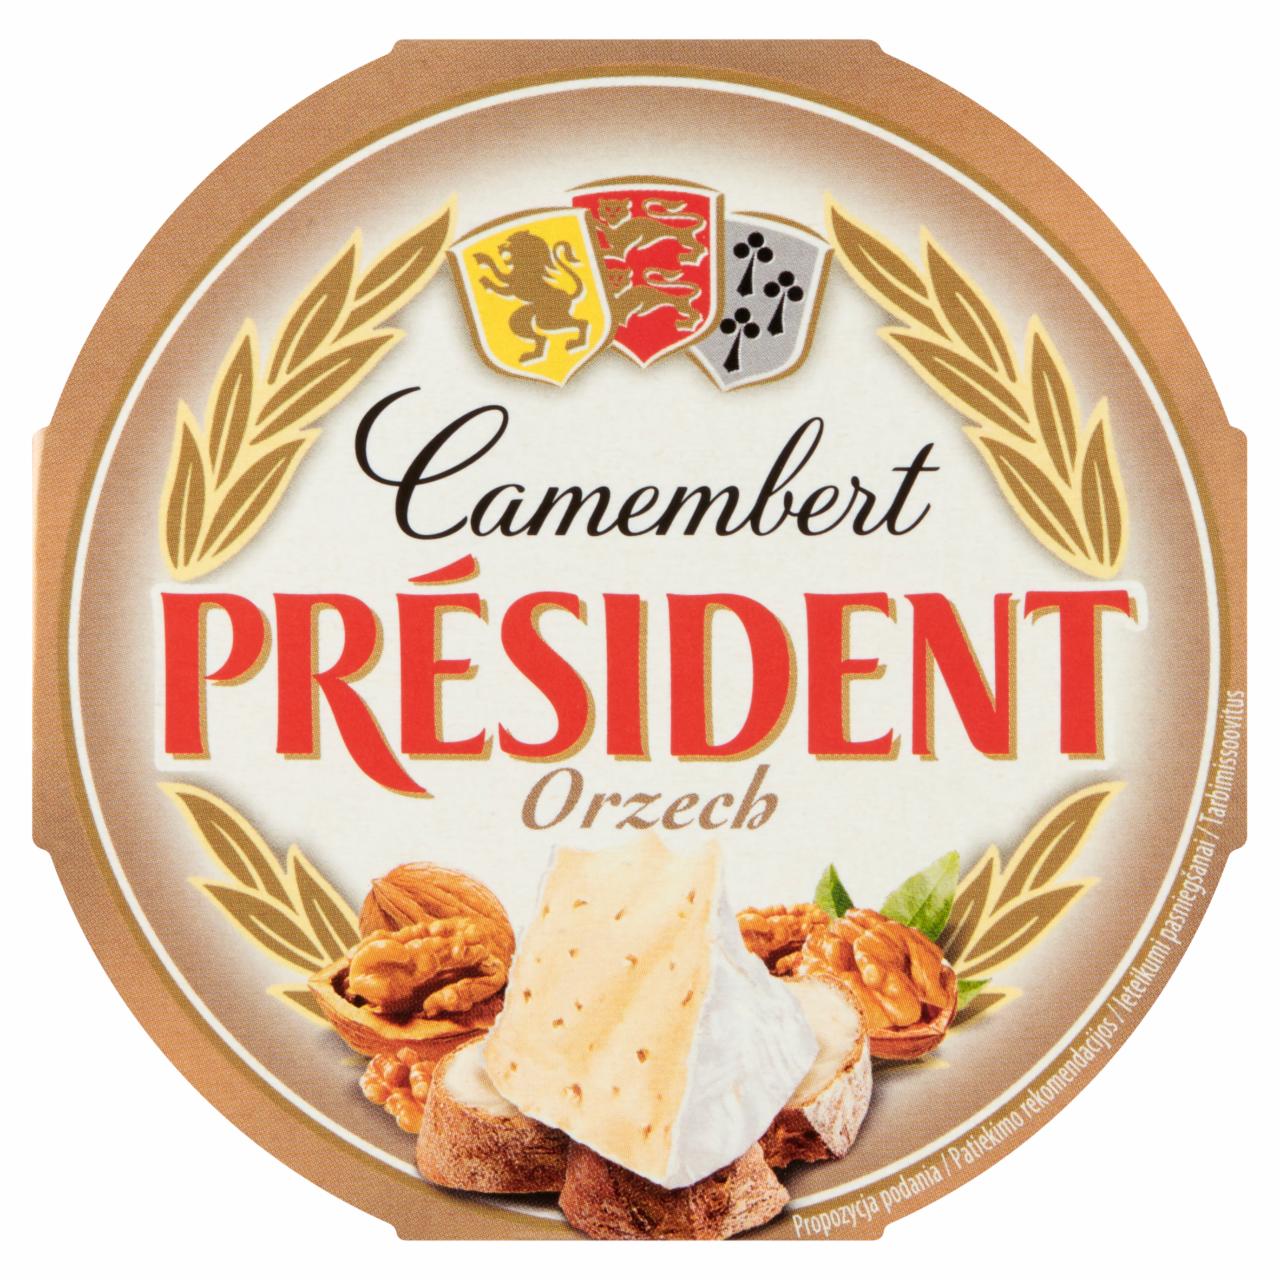 Zdjęcia - Ser Camembert orzech Président